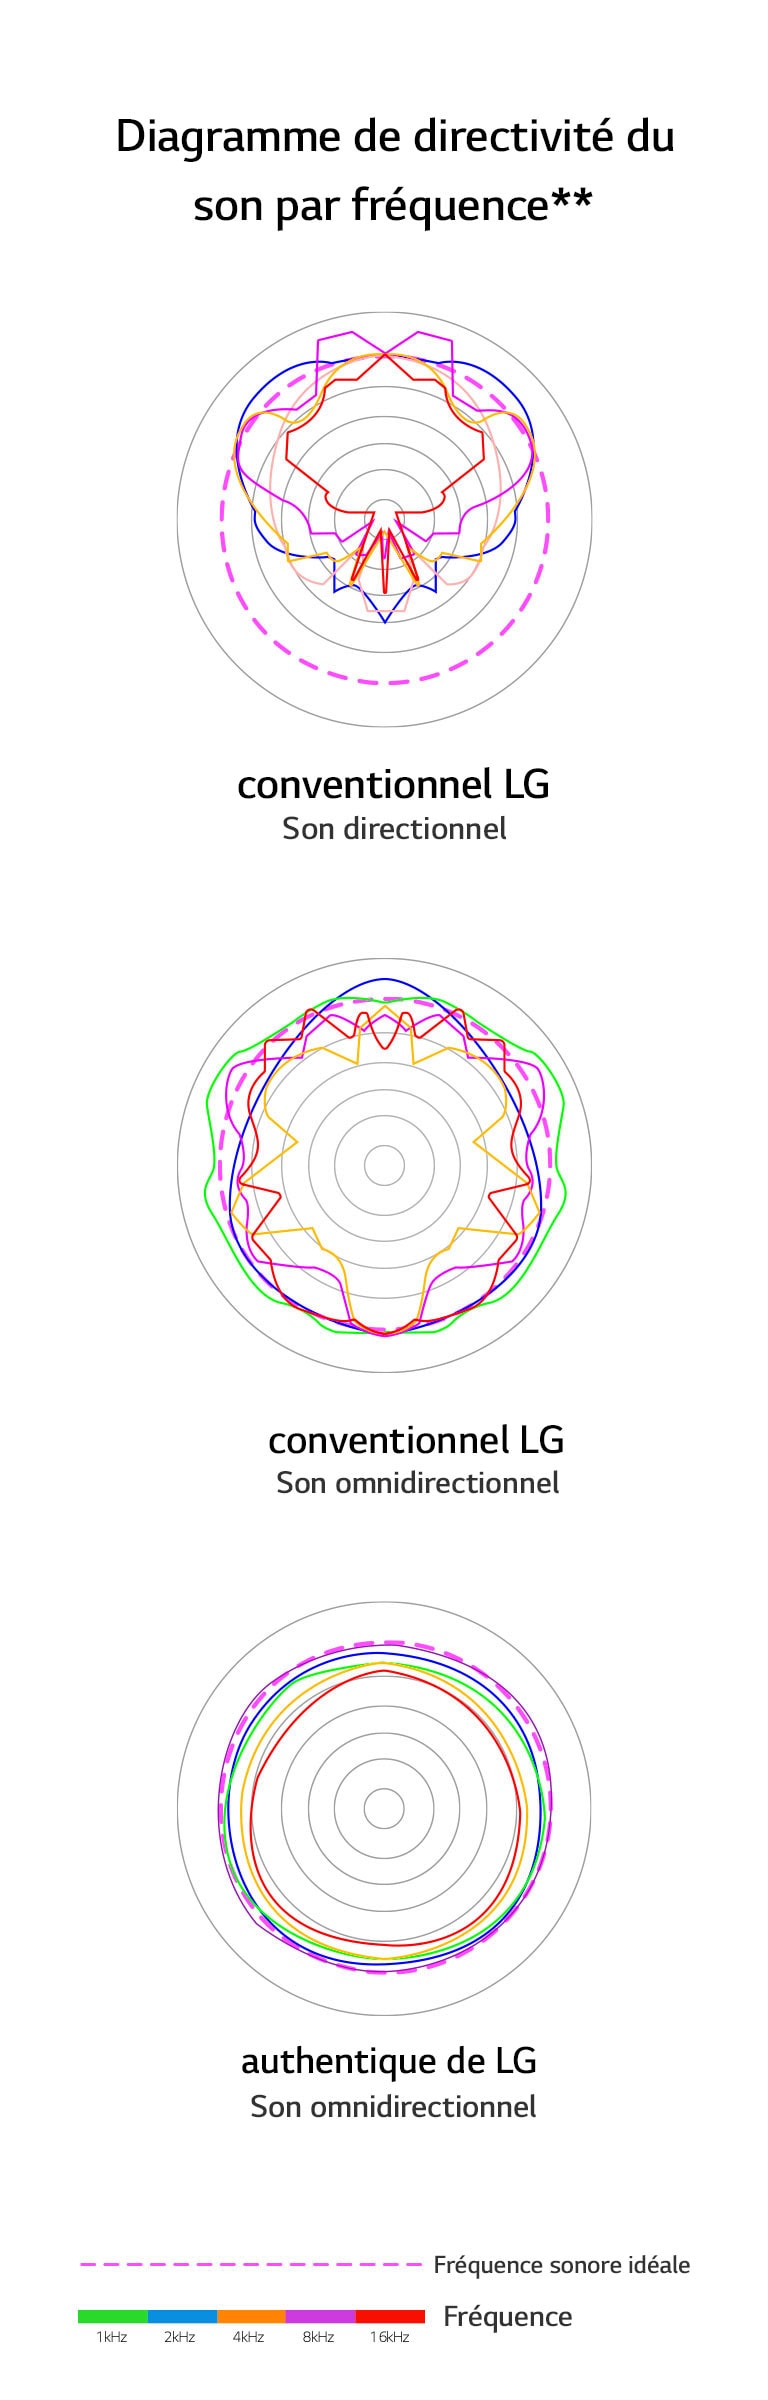 Une image qui compare les longueurs d’ondes sonores du son directionnel conventionnel LG; du son omnidirectionnel conventionnel LG avec celles du son omnidirectionnel authentique de LG.